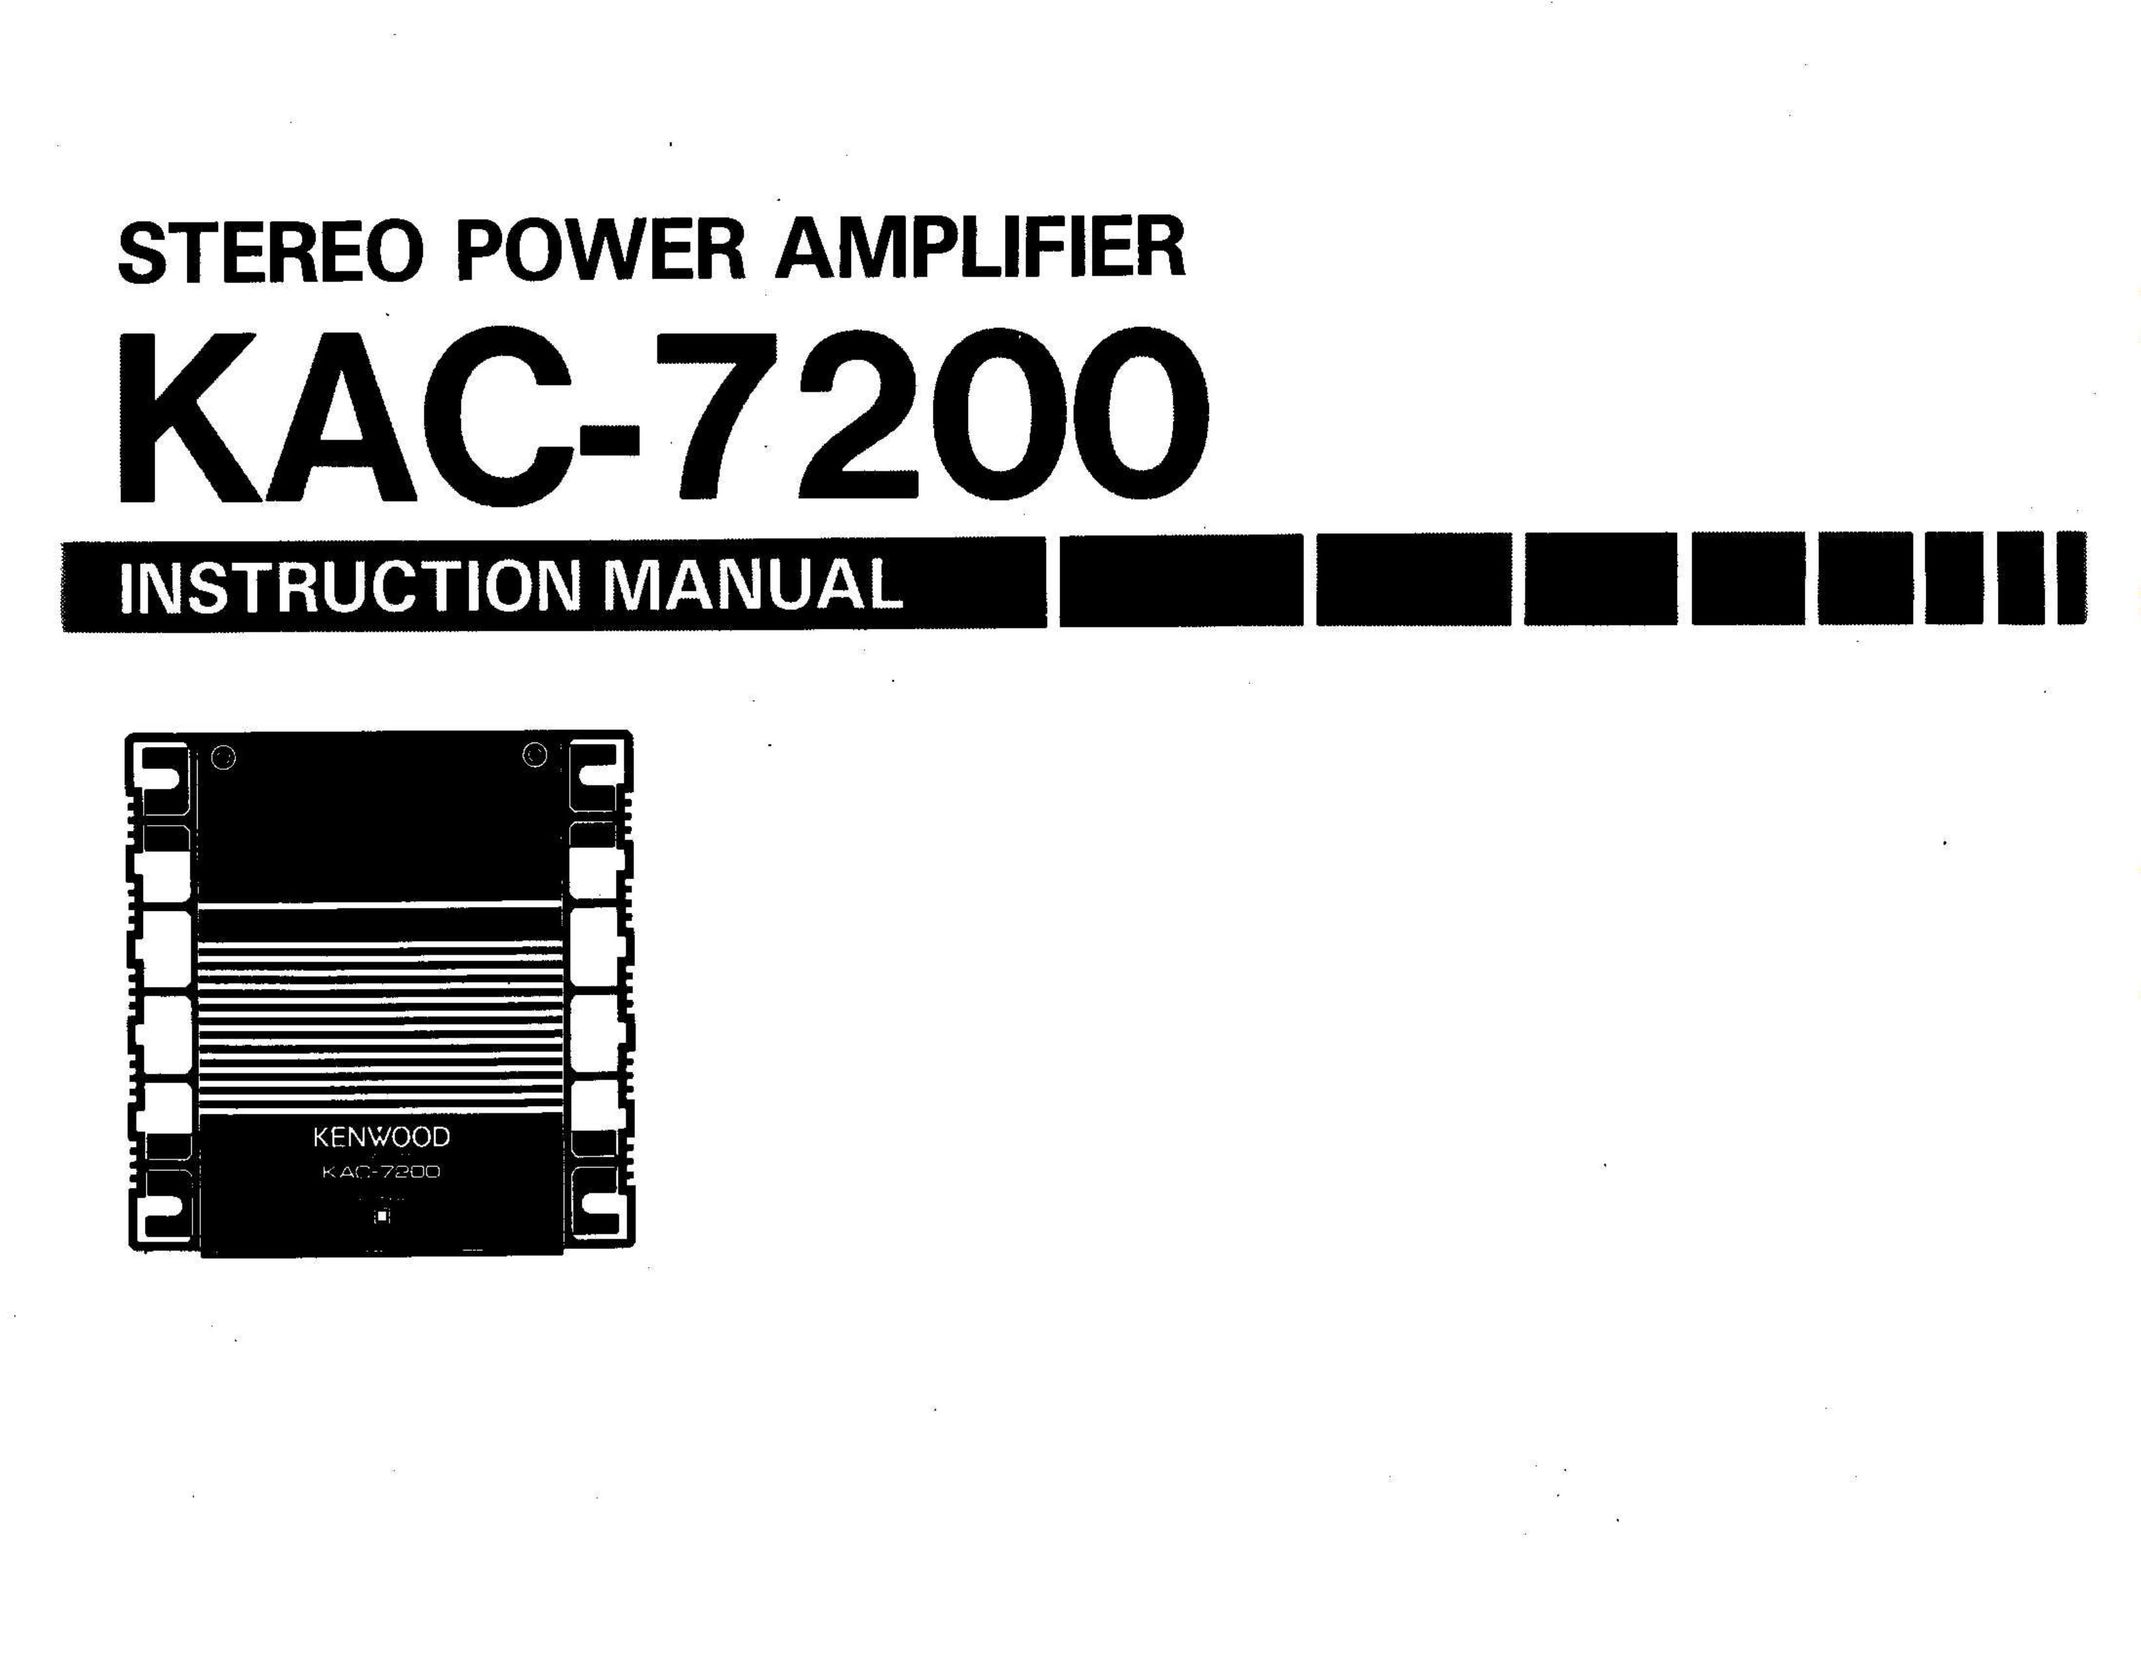 Kenwood KAC-7200 Stereo Amplifier User Manual